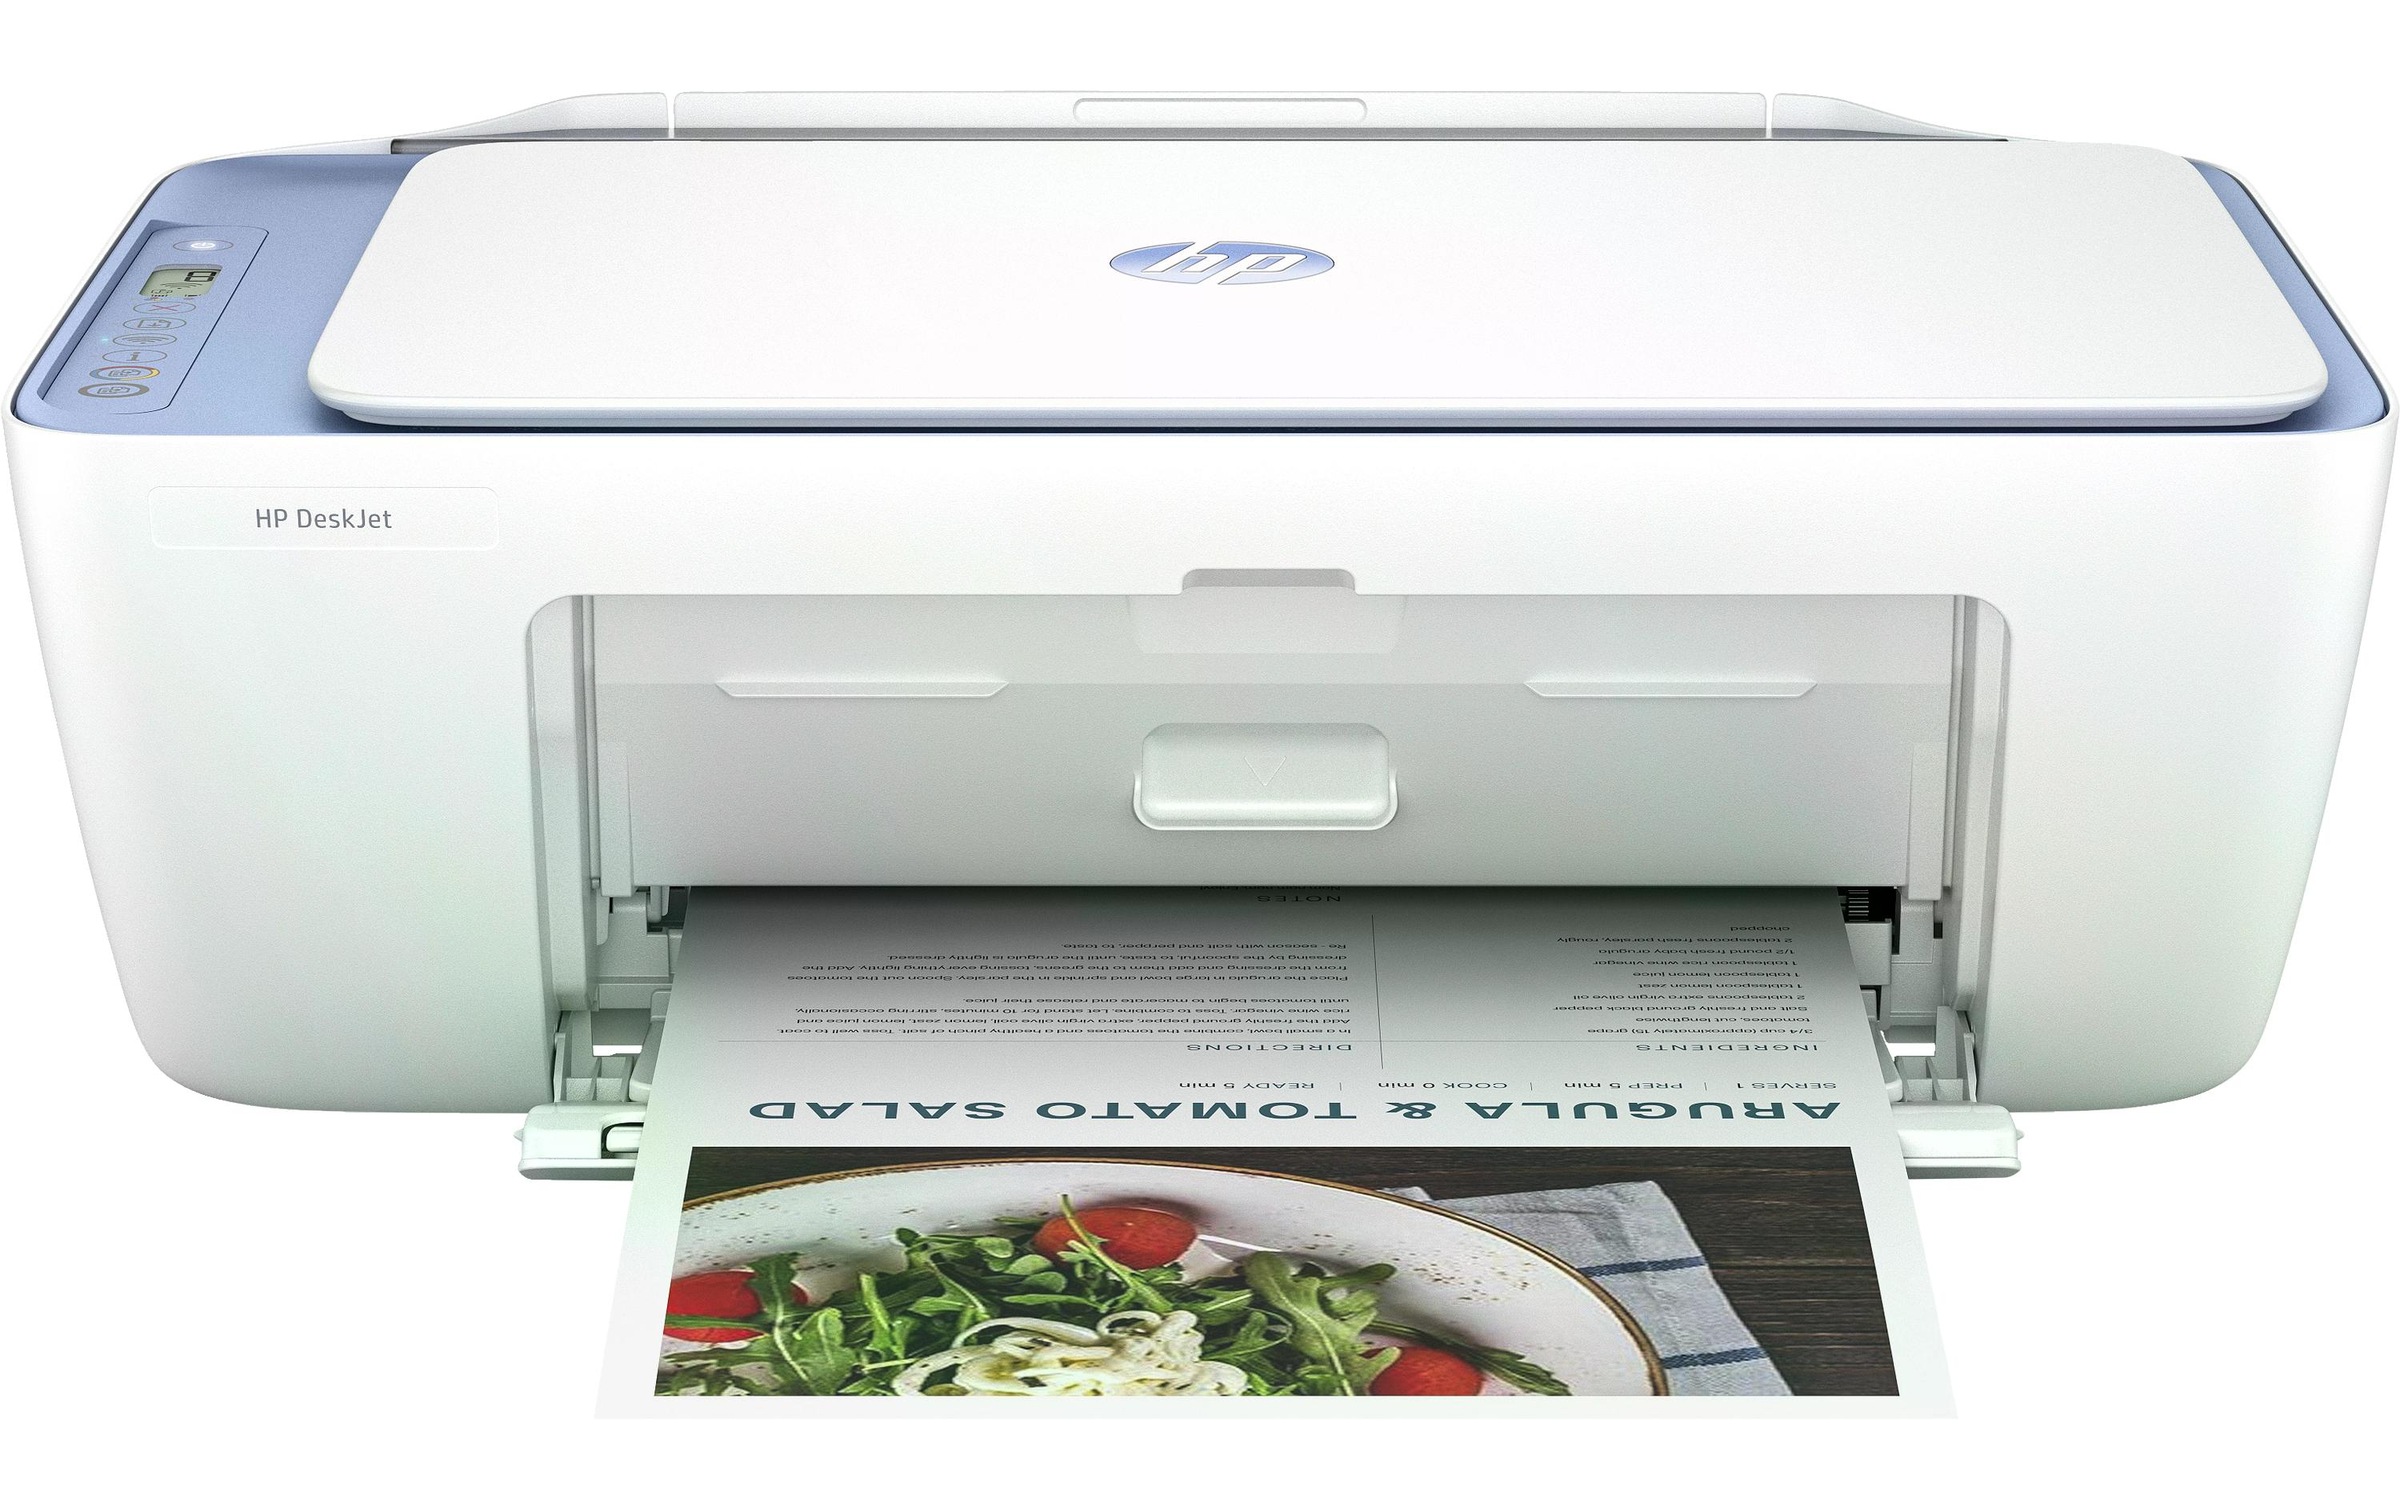 Multifunktionsdrucker »DeskJet 2822e All-in-One«